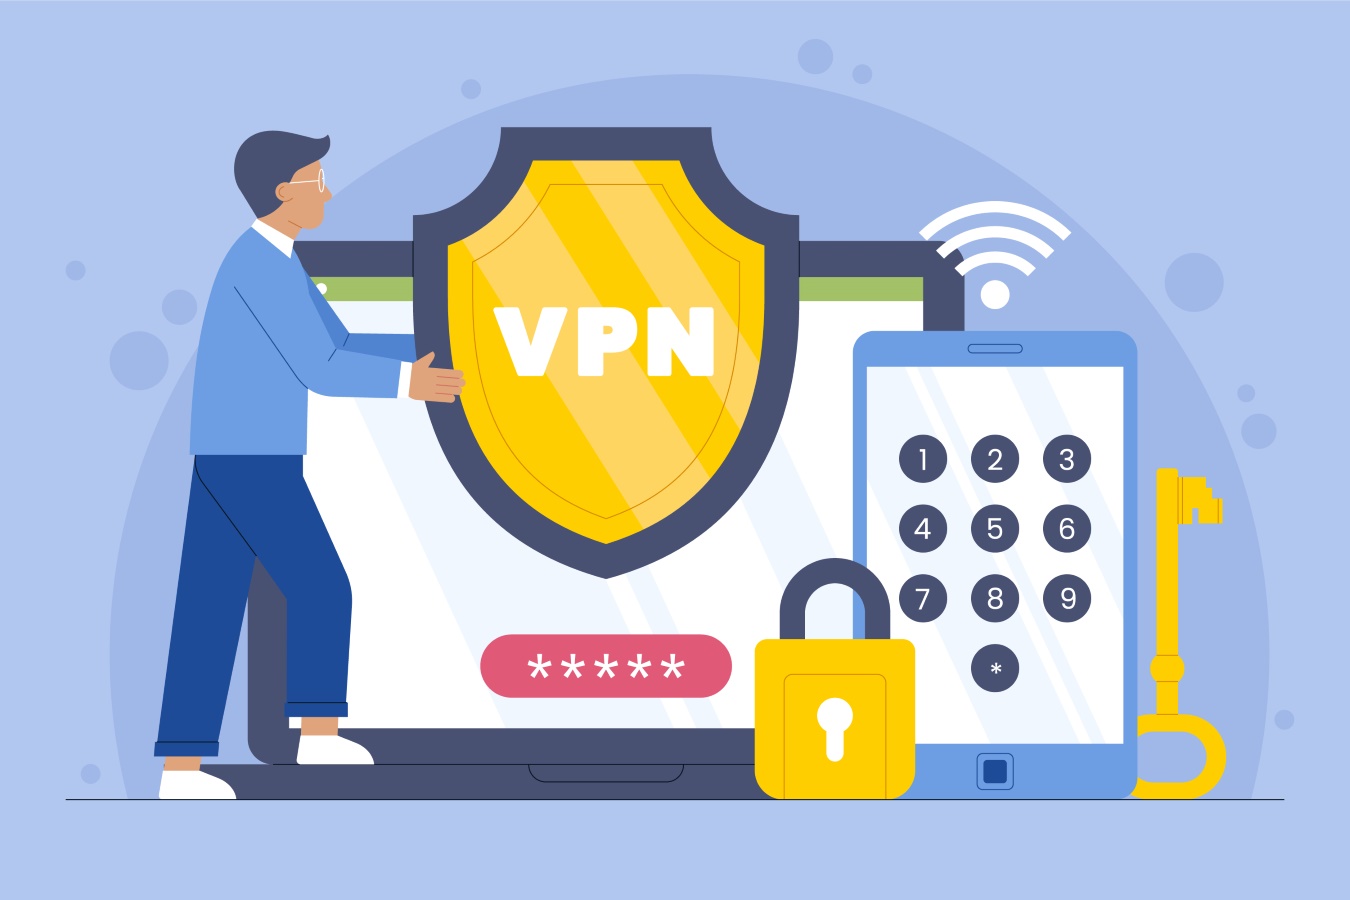 ¿Cuál es la función de un VPN?